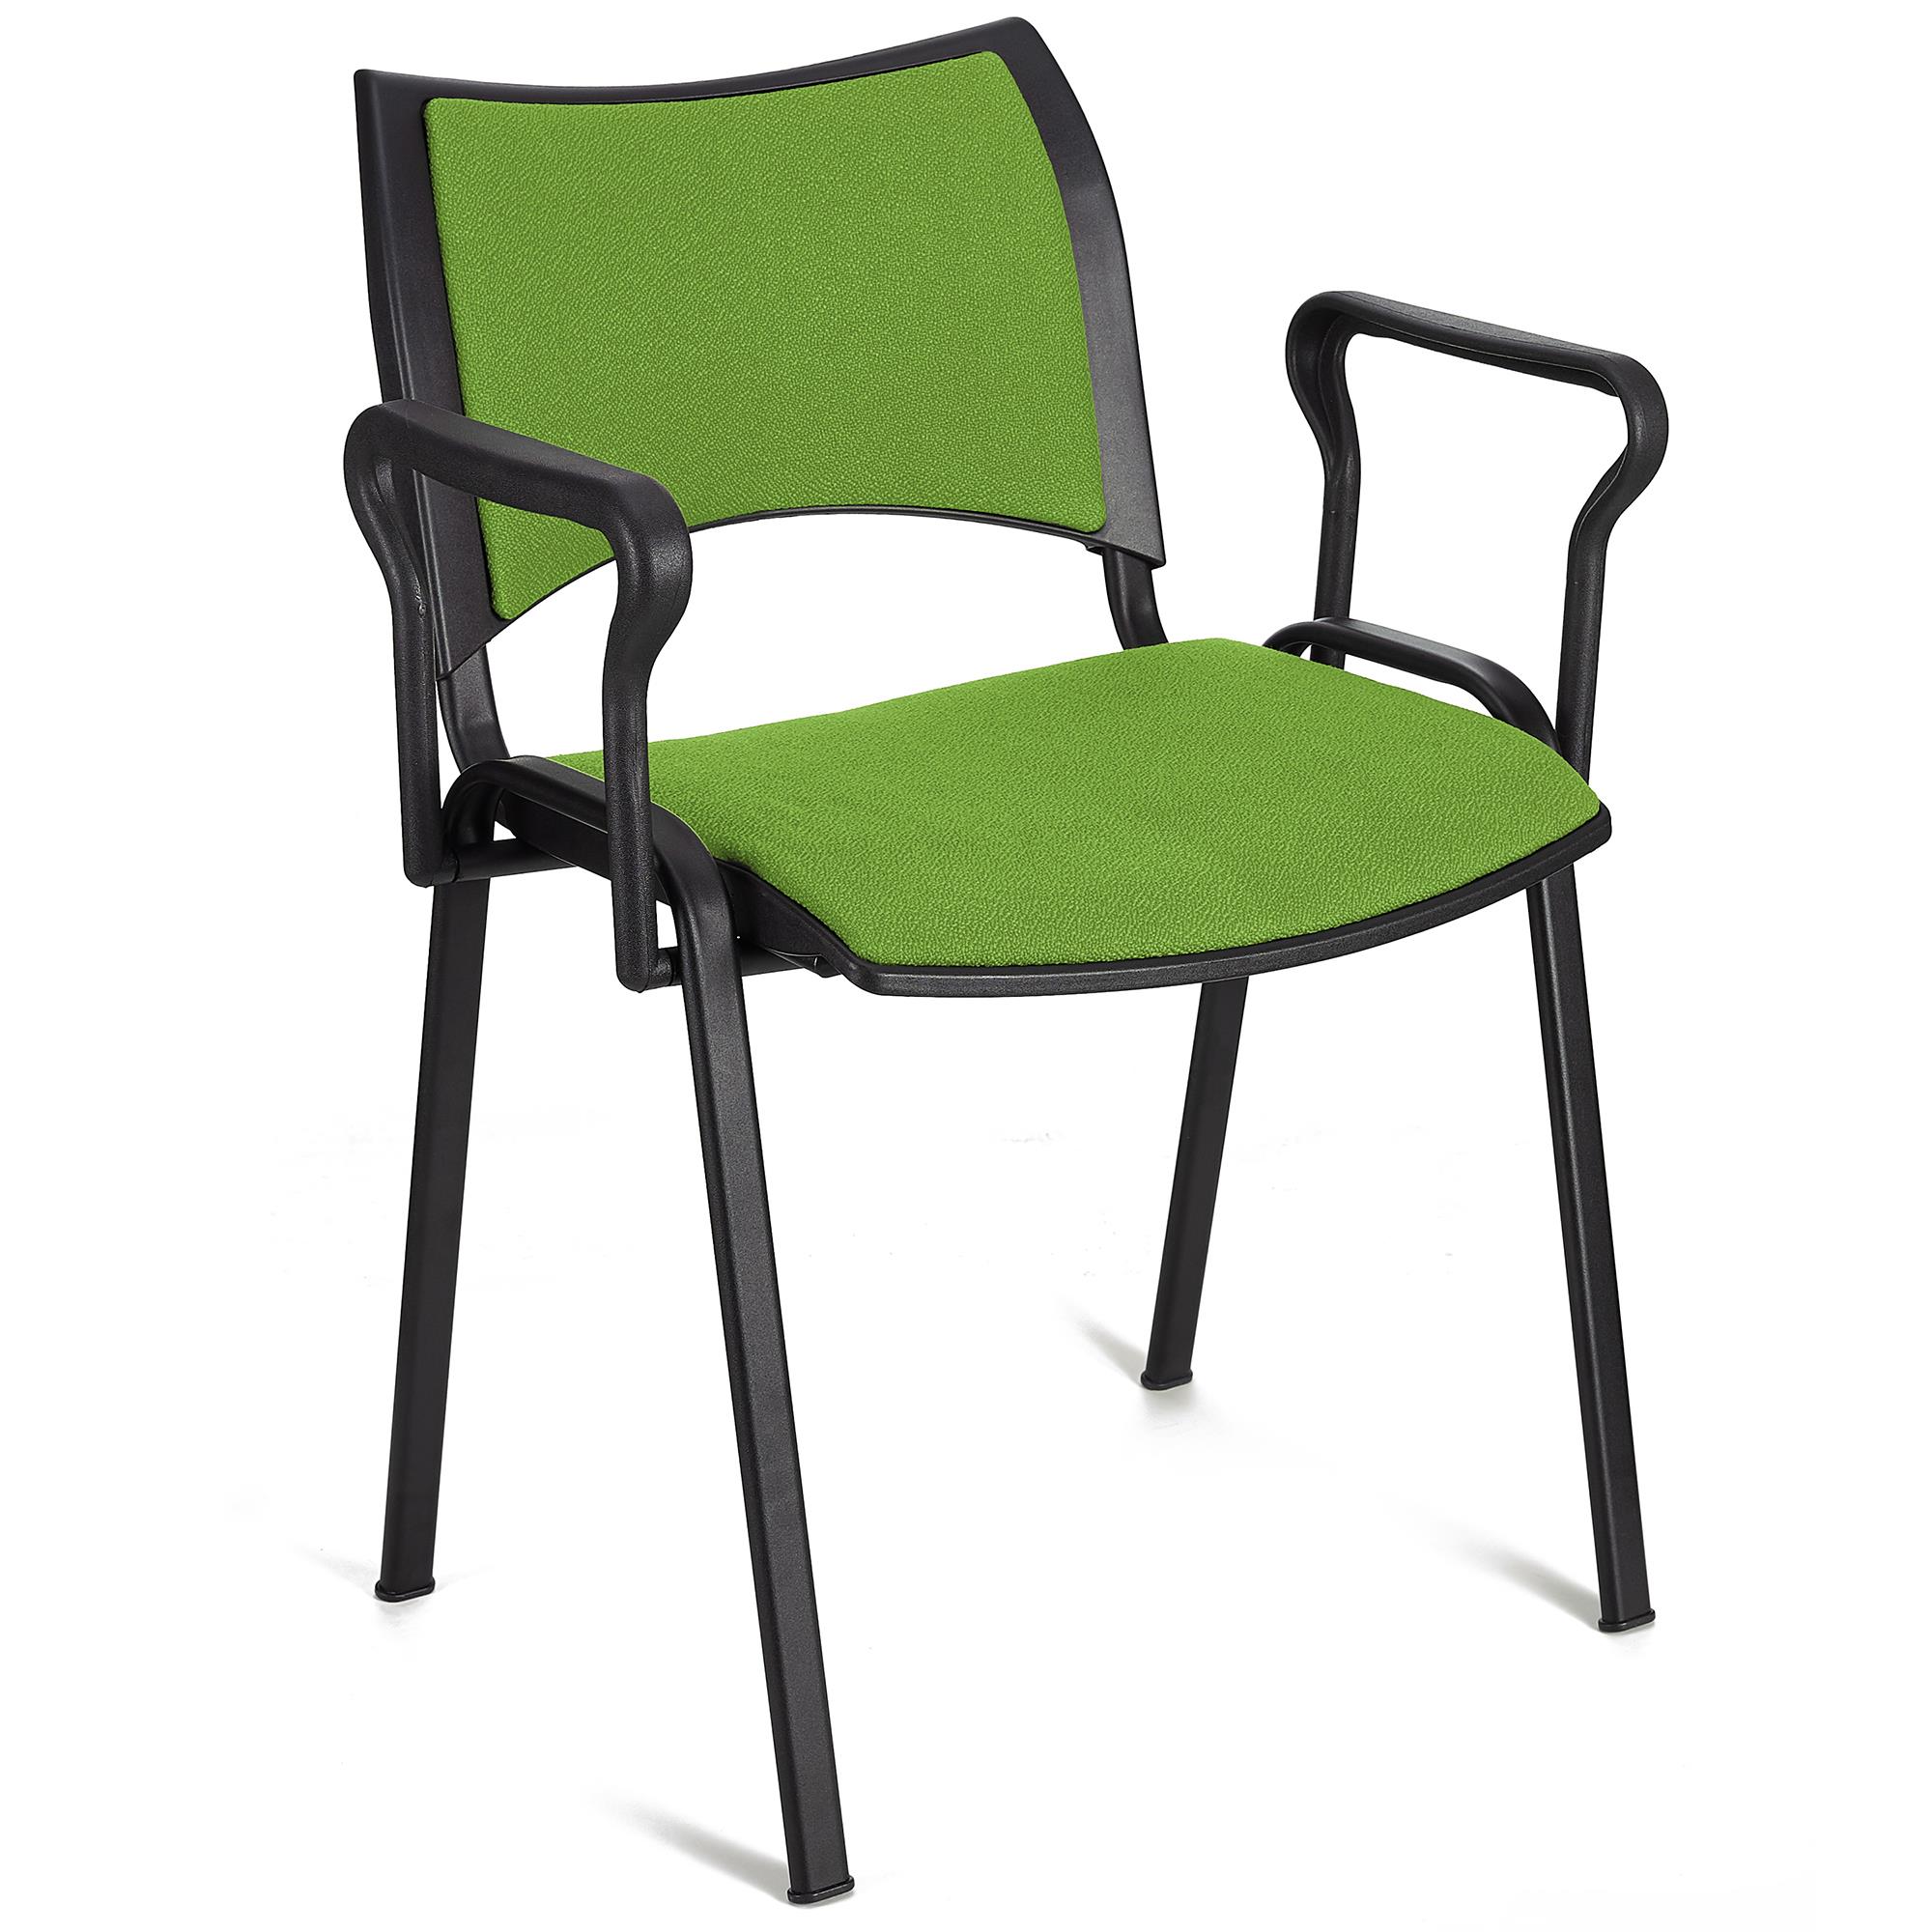 Cadeira de Visitante ROMEL COM BRAÇOS, Acolchoado Confortável, Empilhável, Patas Pretas, em Pano Verde Lima